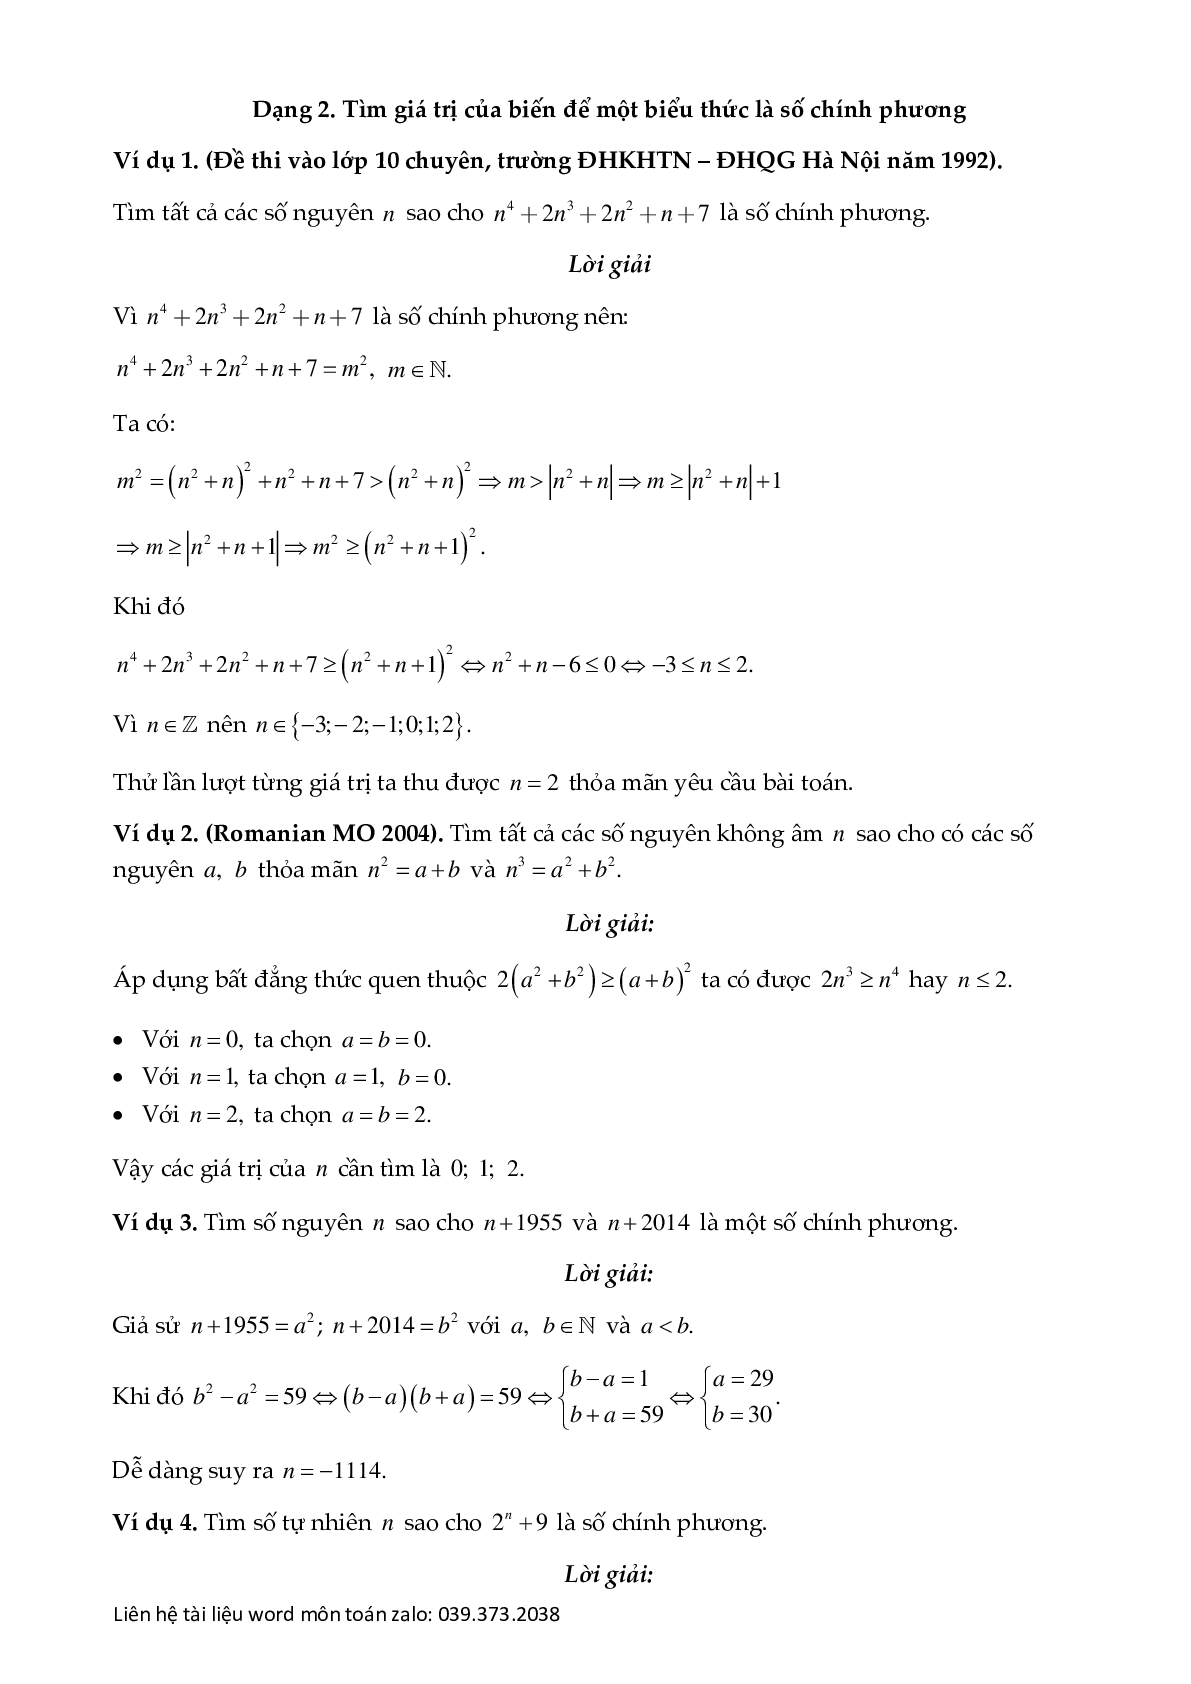 Chuyên đề số chính phương (trang 6)